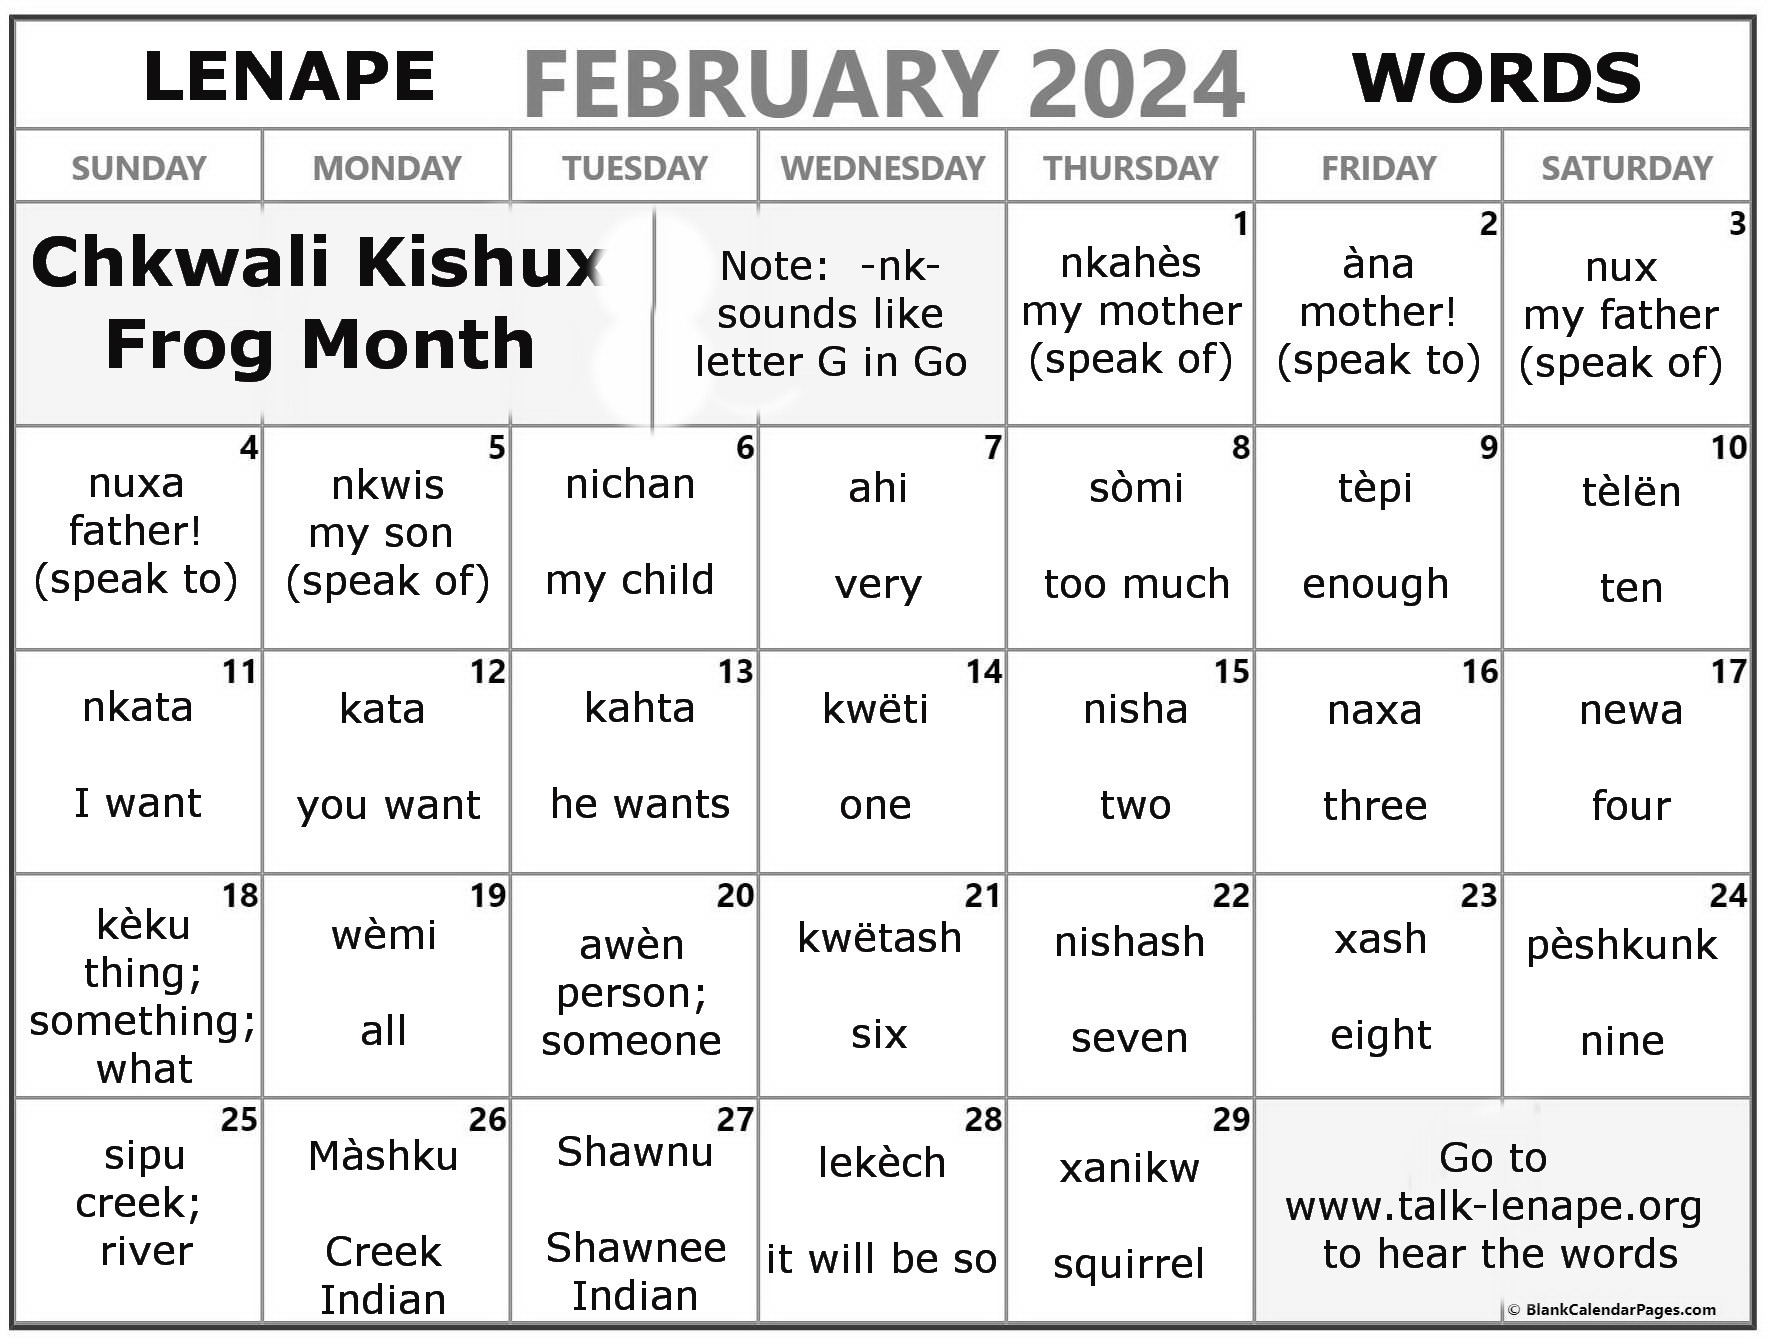 February 2024 Lenape Word-a-Day Calendar